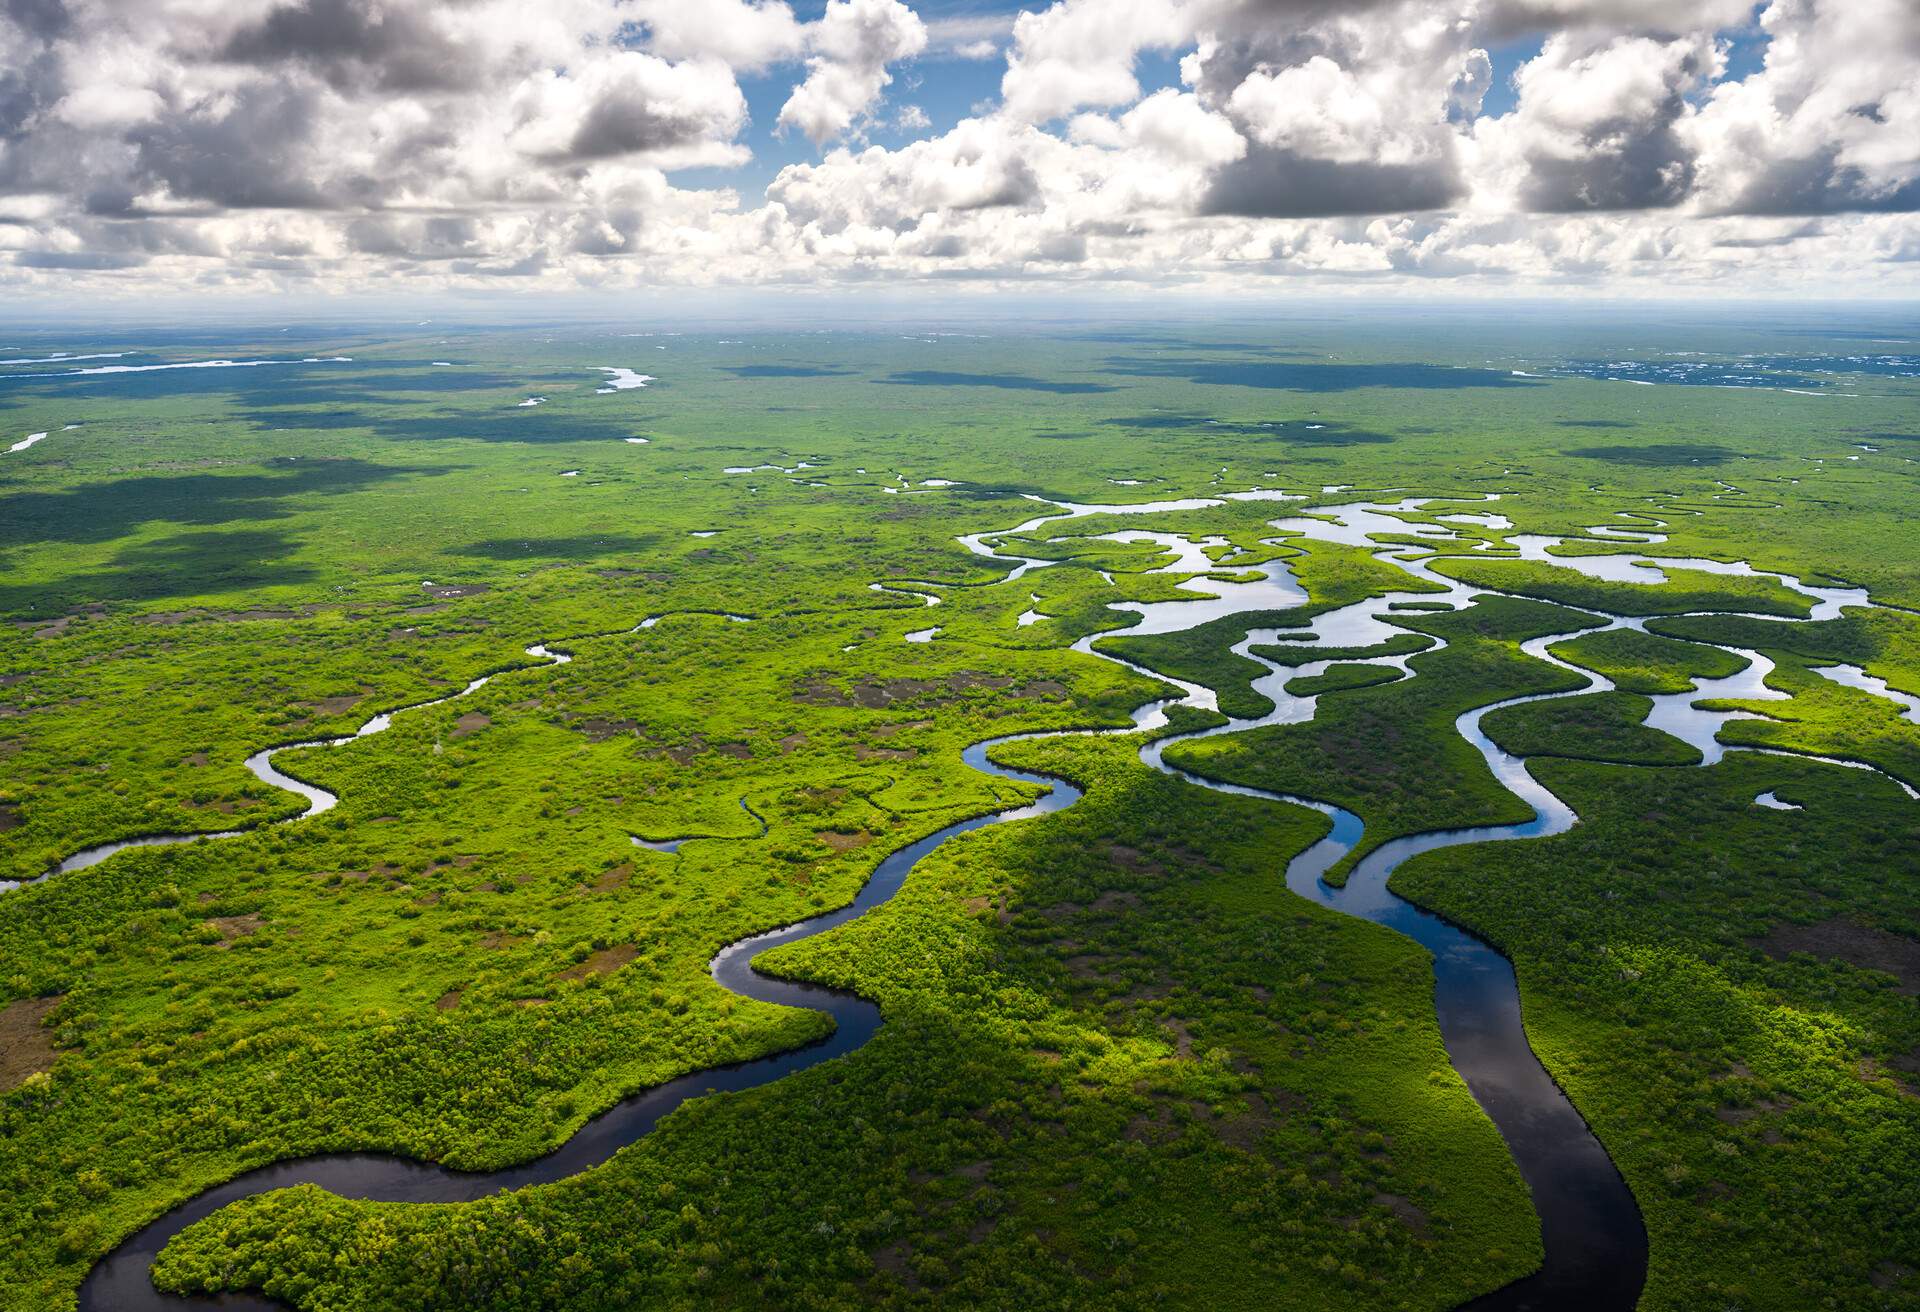 Aerial view over grasslands of Everglades National Park, Florida, USA